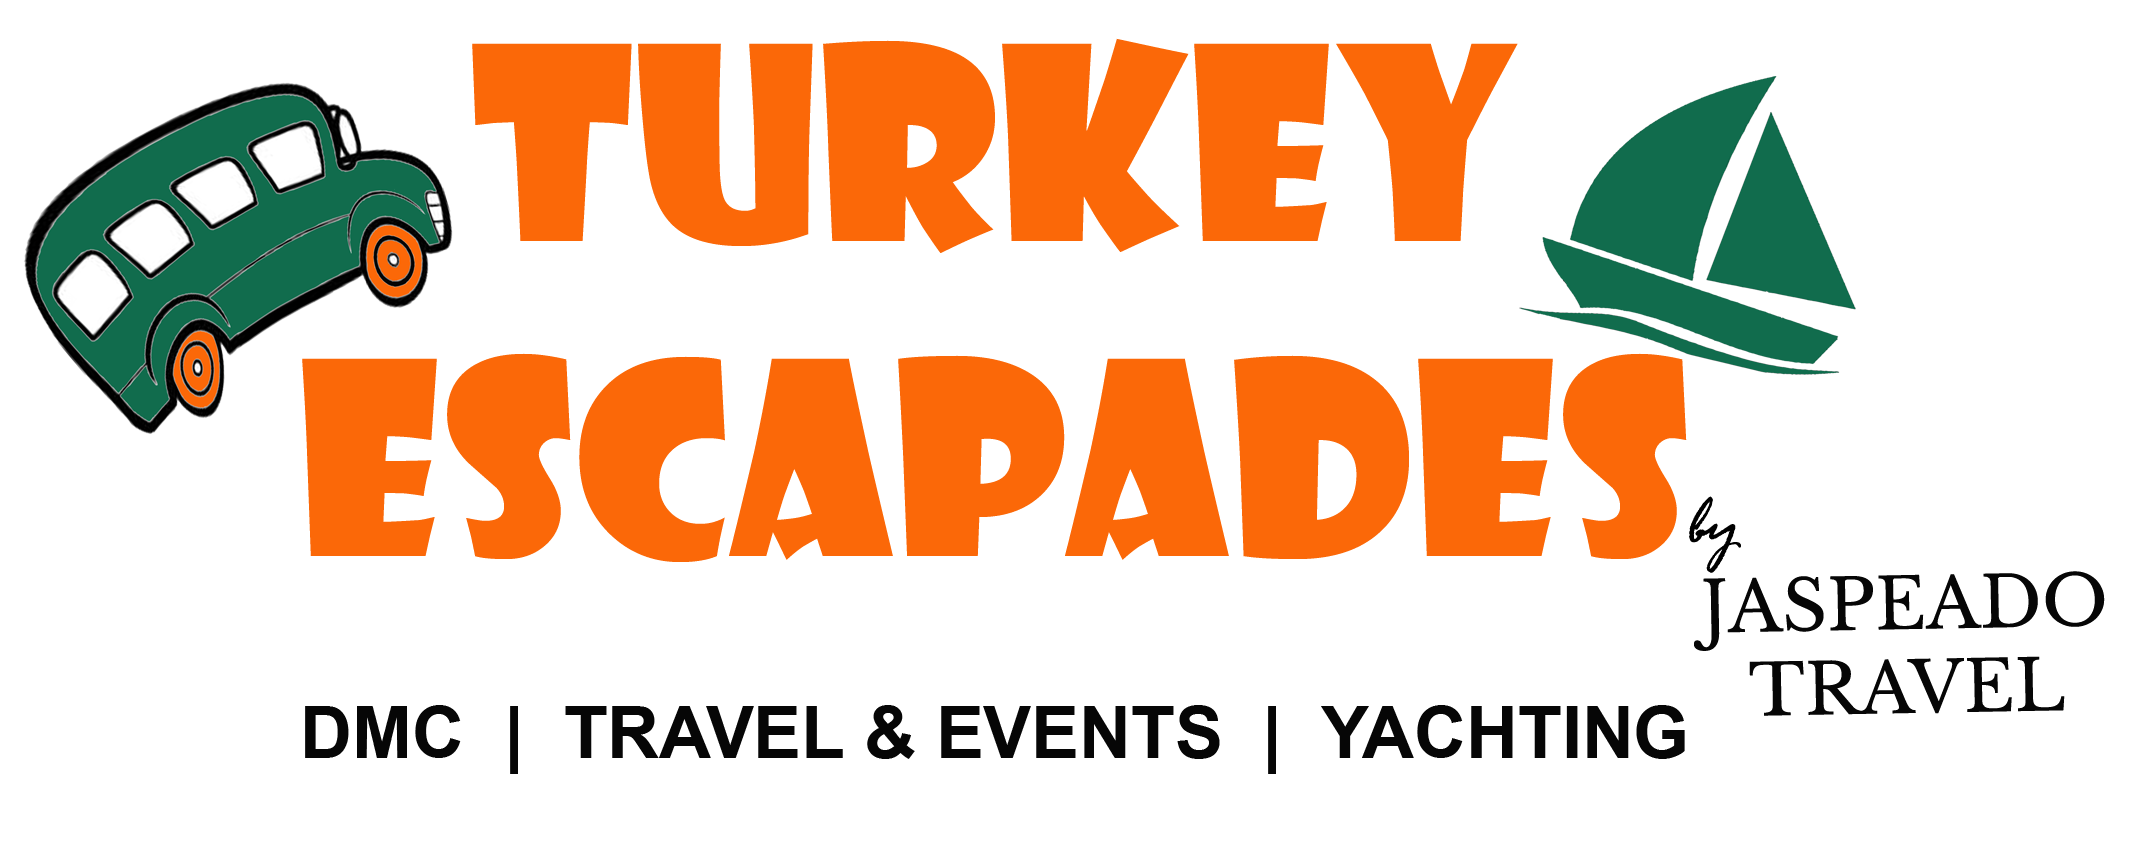 Turkey Escapades | Visitas guiadas en español - Turkey Escapades Visitas guiadas en español